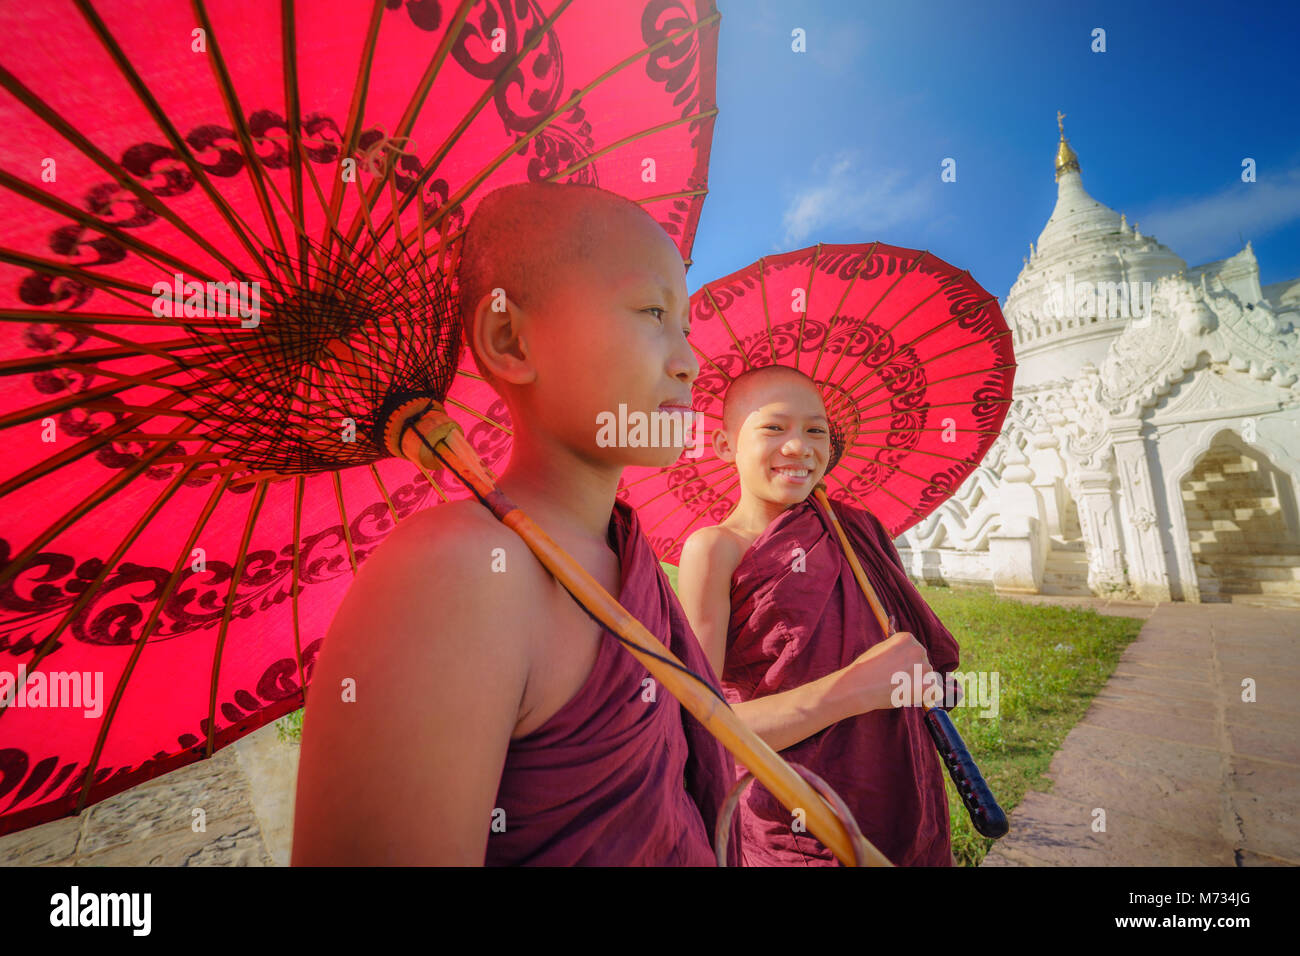 MANDALAY, Myanmar, - Dezember 11, 2017: Nicht identifizierte zwei Asiatische junge Mönch halten roten Sonnenschirme am Mya Thein Tan Pagode in Mandalay Mingun, Myanma Stockfoto